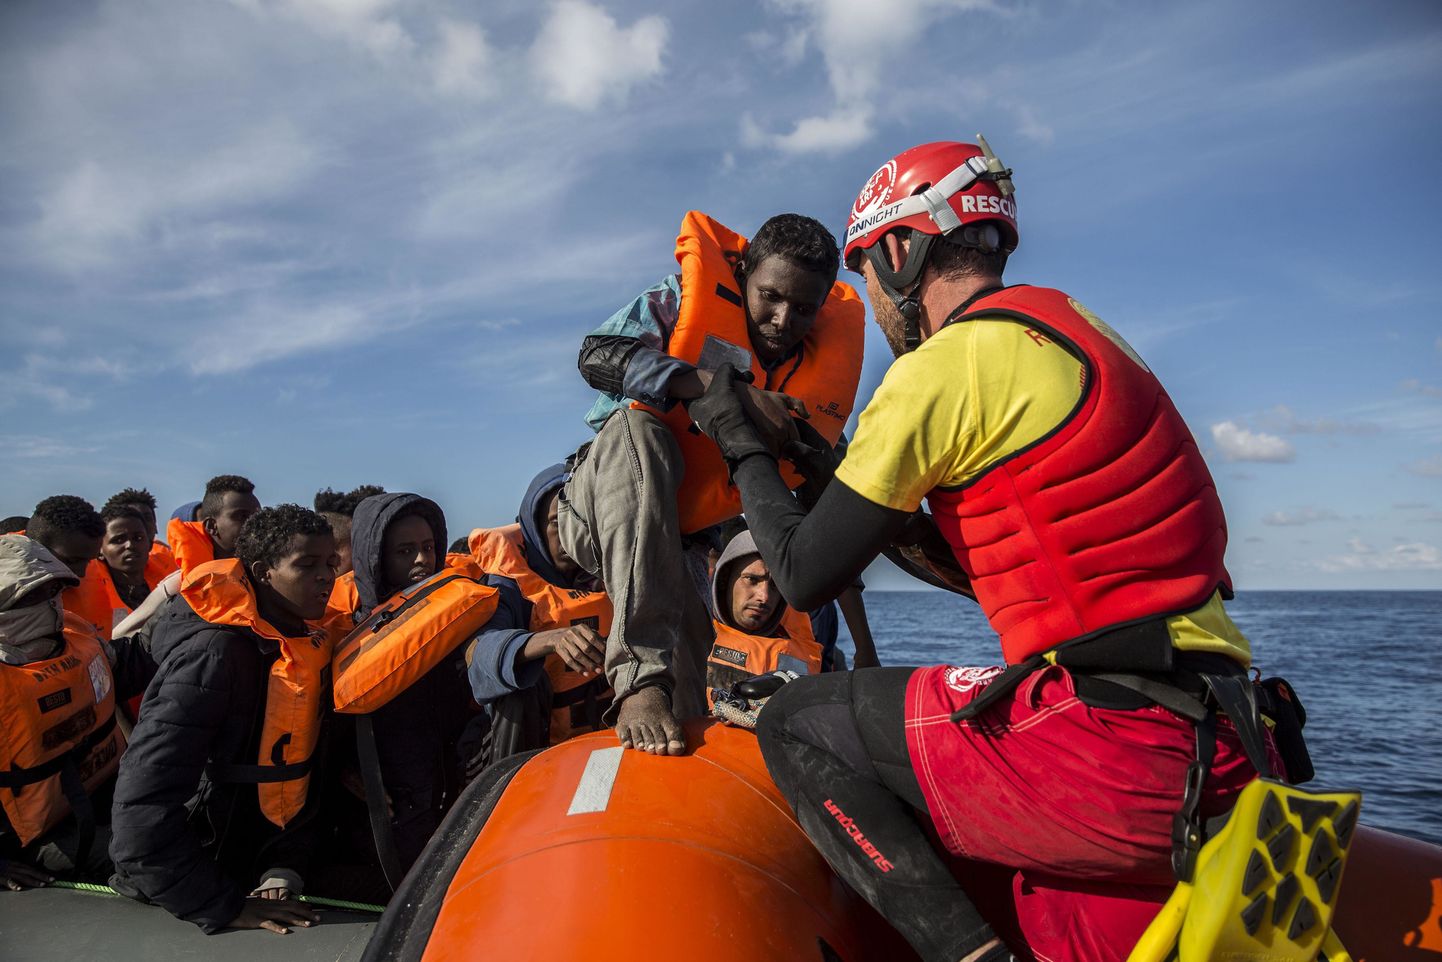 Pilt on illustratiivne. Hispaania merevägi päästis Detsembris migrante.